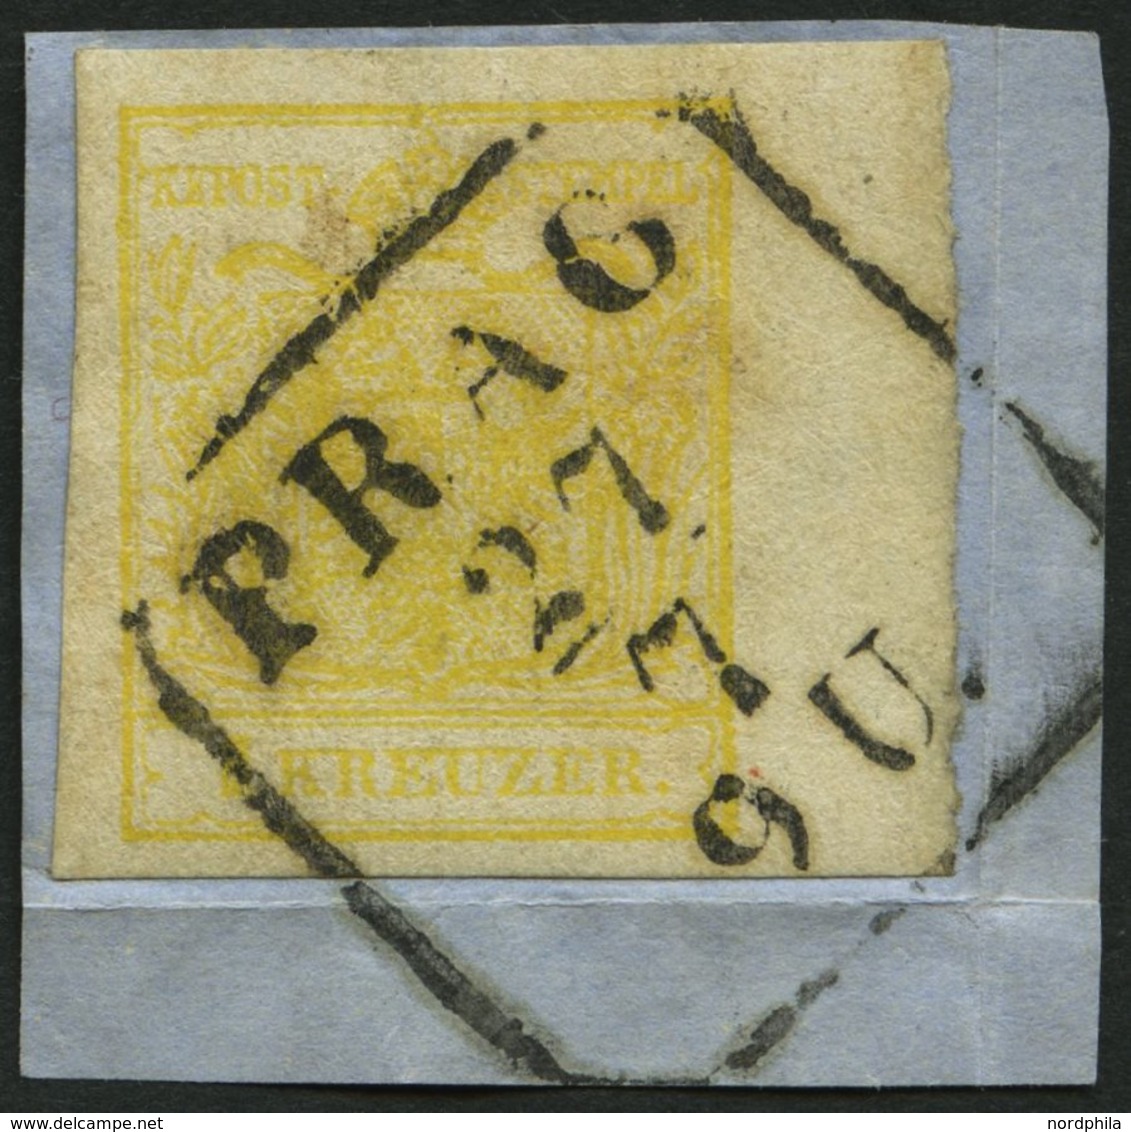 ÖSTERREICH 1Ya BrfStk, 1854, 1 Kr. Gelb, Maschinenpapier, Type Ib, Mit Rechtem Rand (6 Mm), R4 PRAG, Prachtbriefstück - Used Stamps